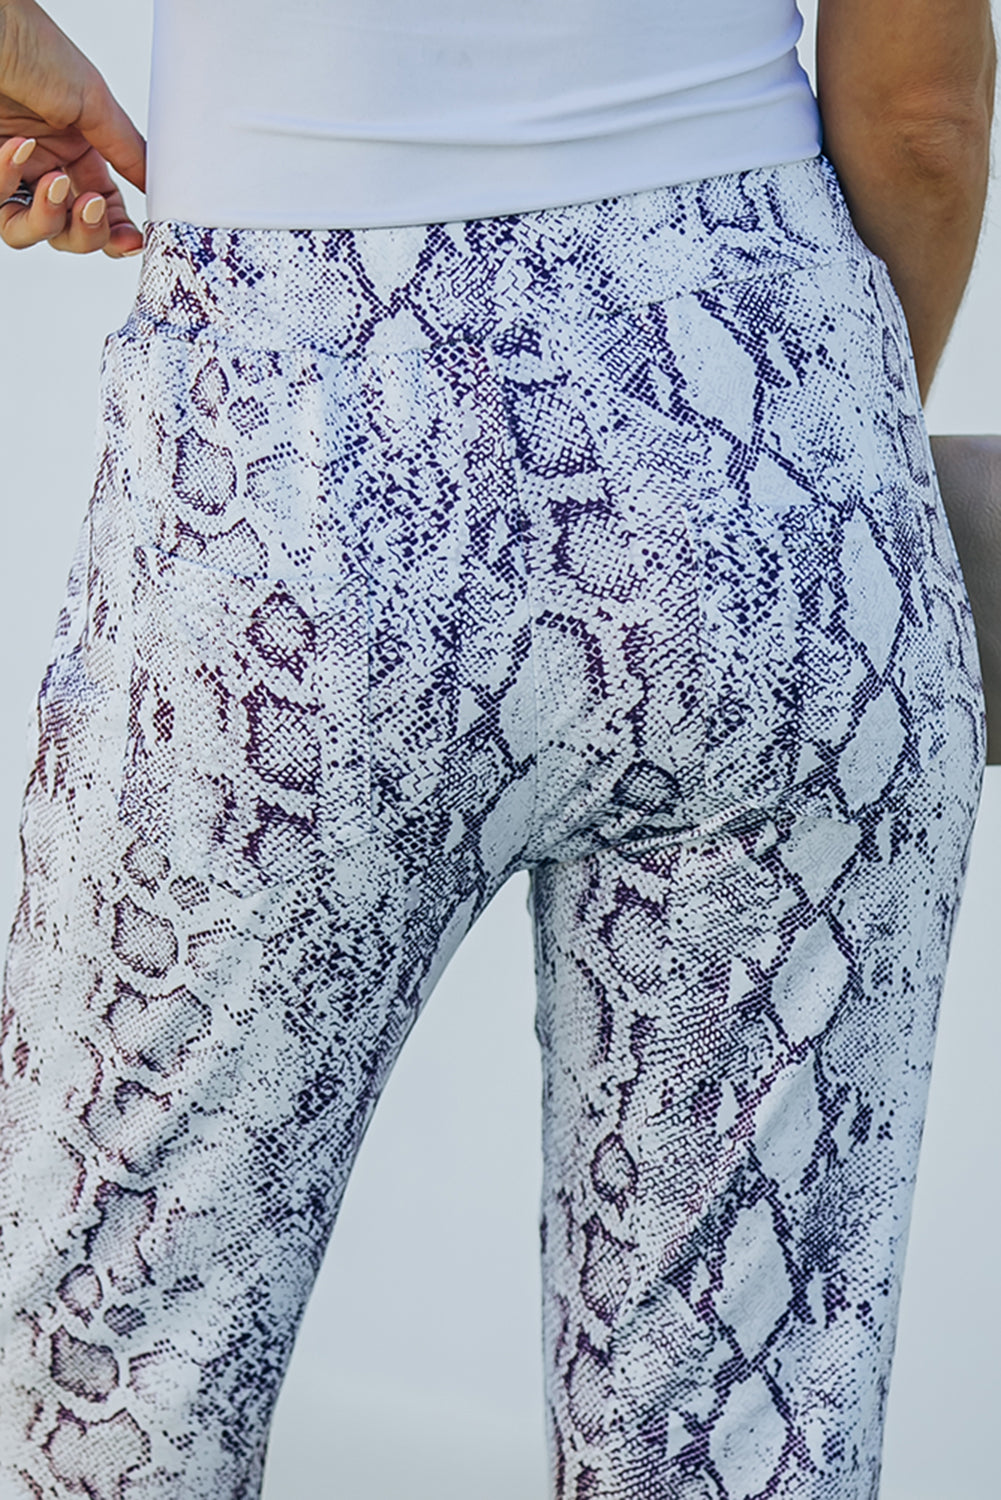 Snakeskin Print Wide Legs Pants